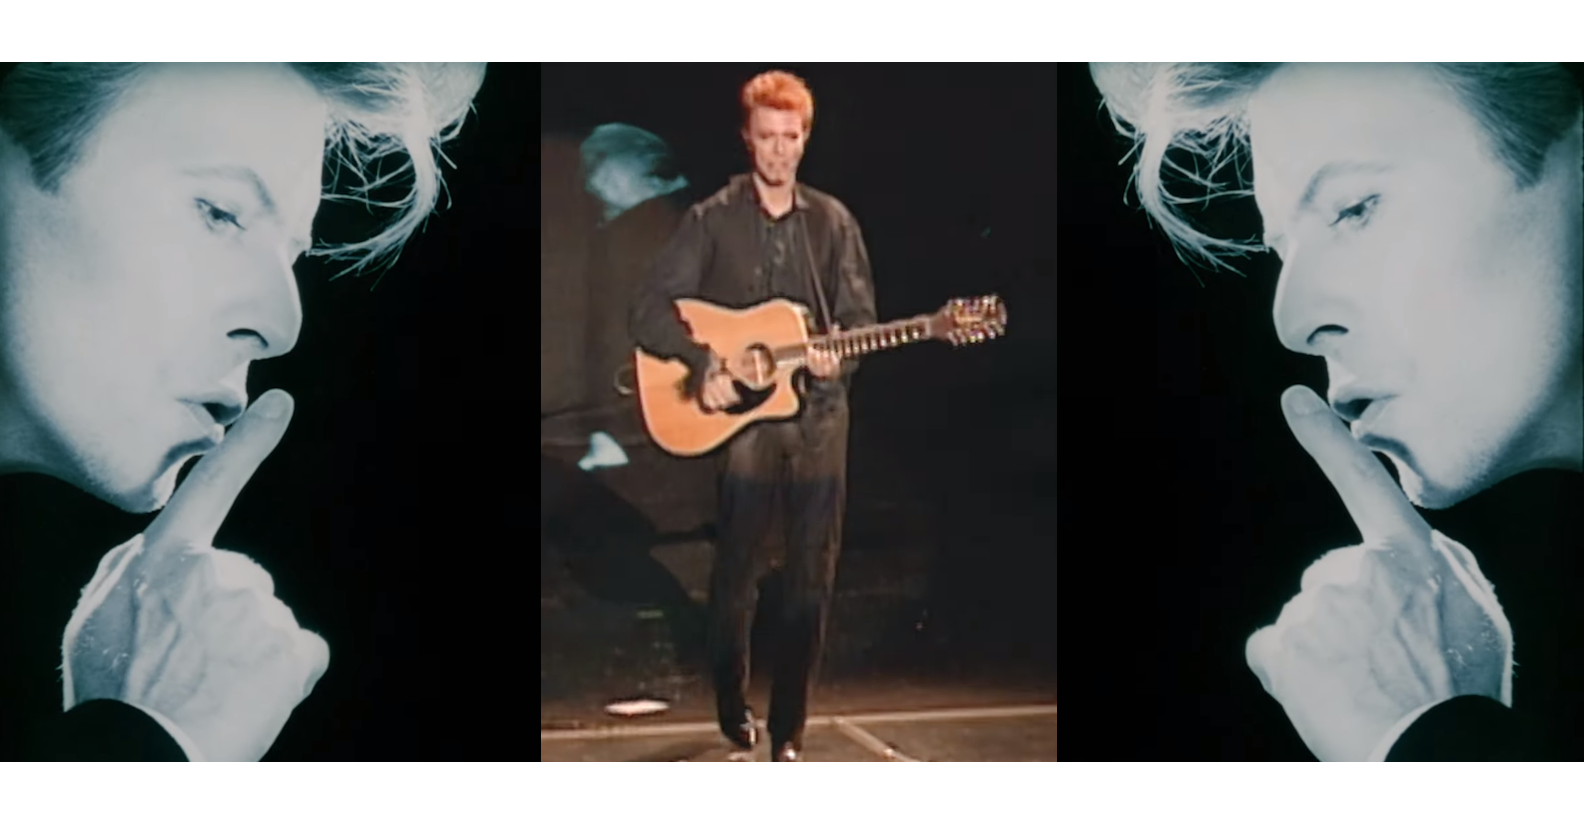 Mirá un nuevo video de Space Oddity de Bowie a 50 años del hombre en la luna